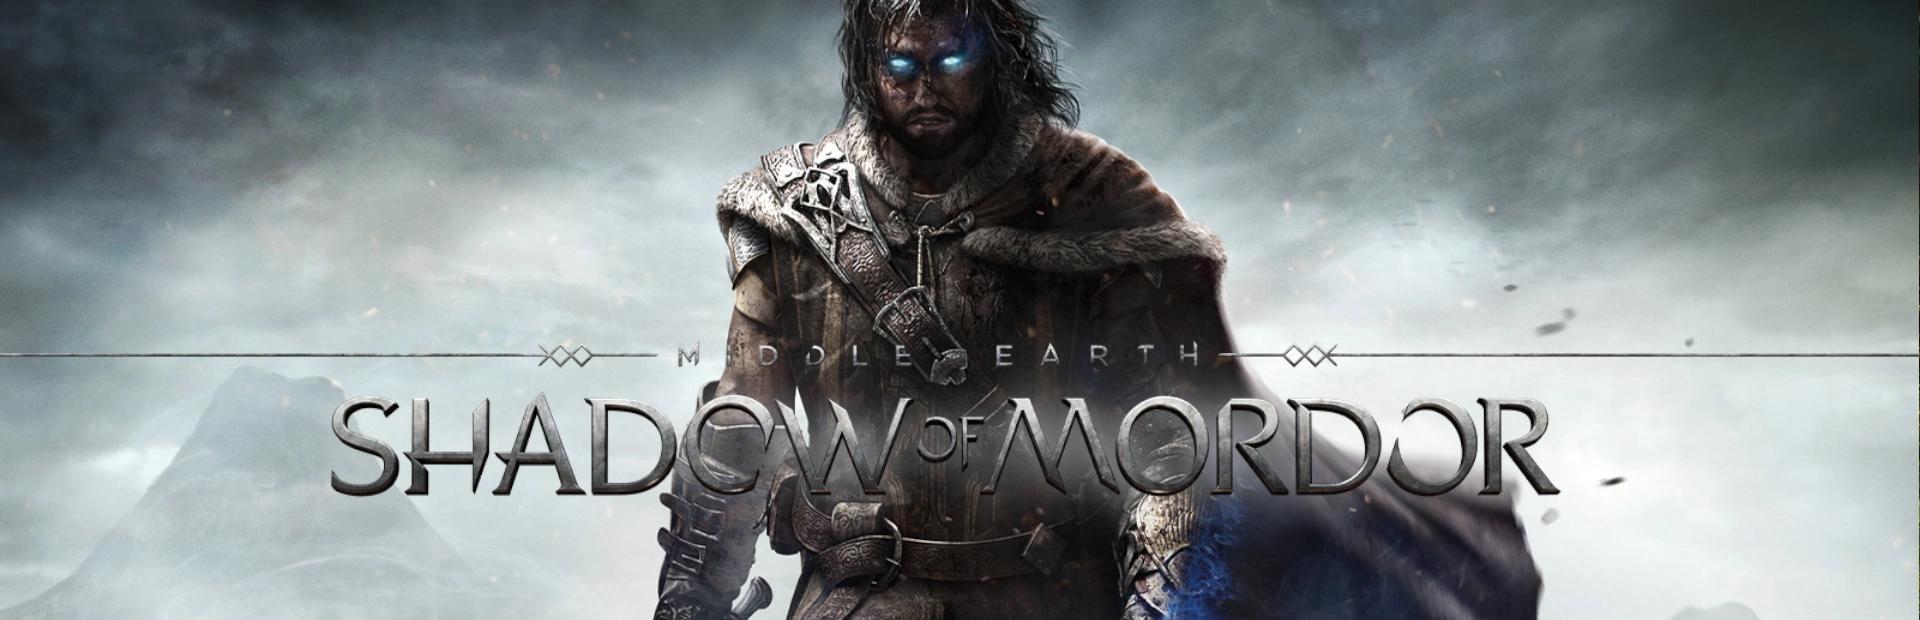 دانلود بازی Middle-earth: Shadow of Mordor برای PC | گیمباتو